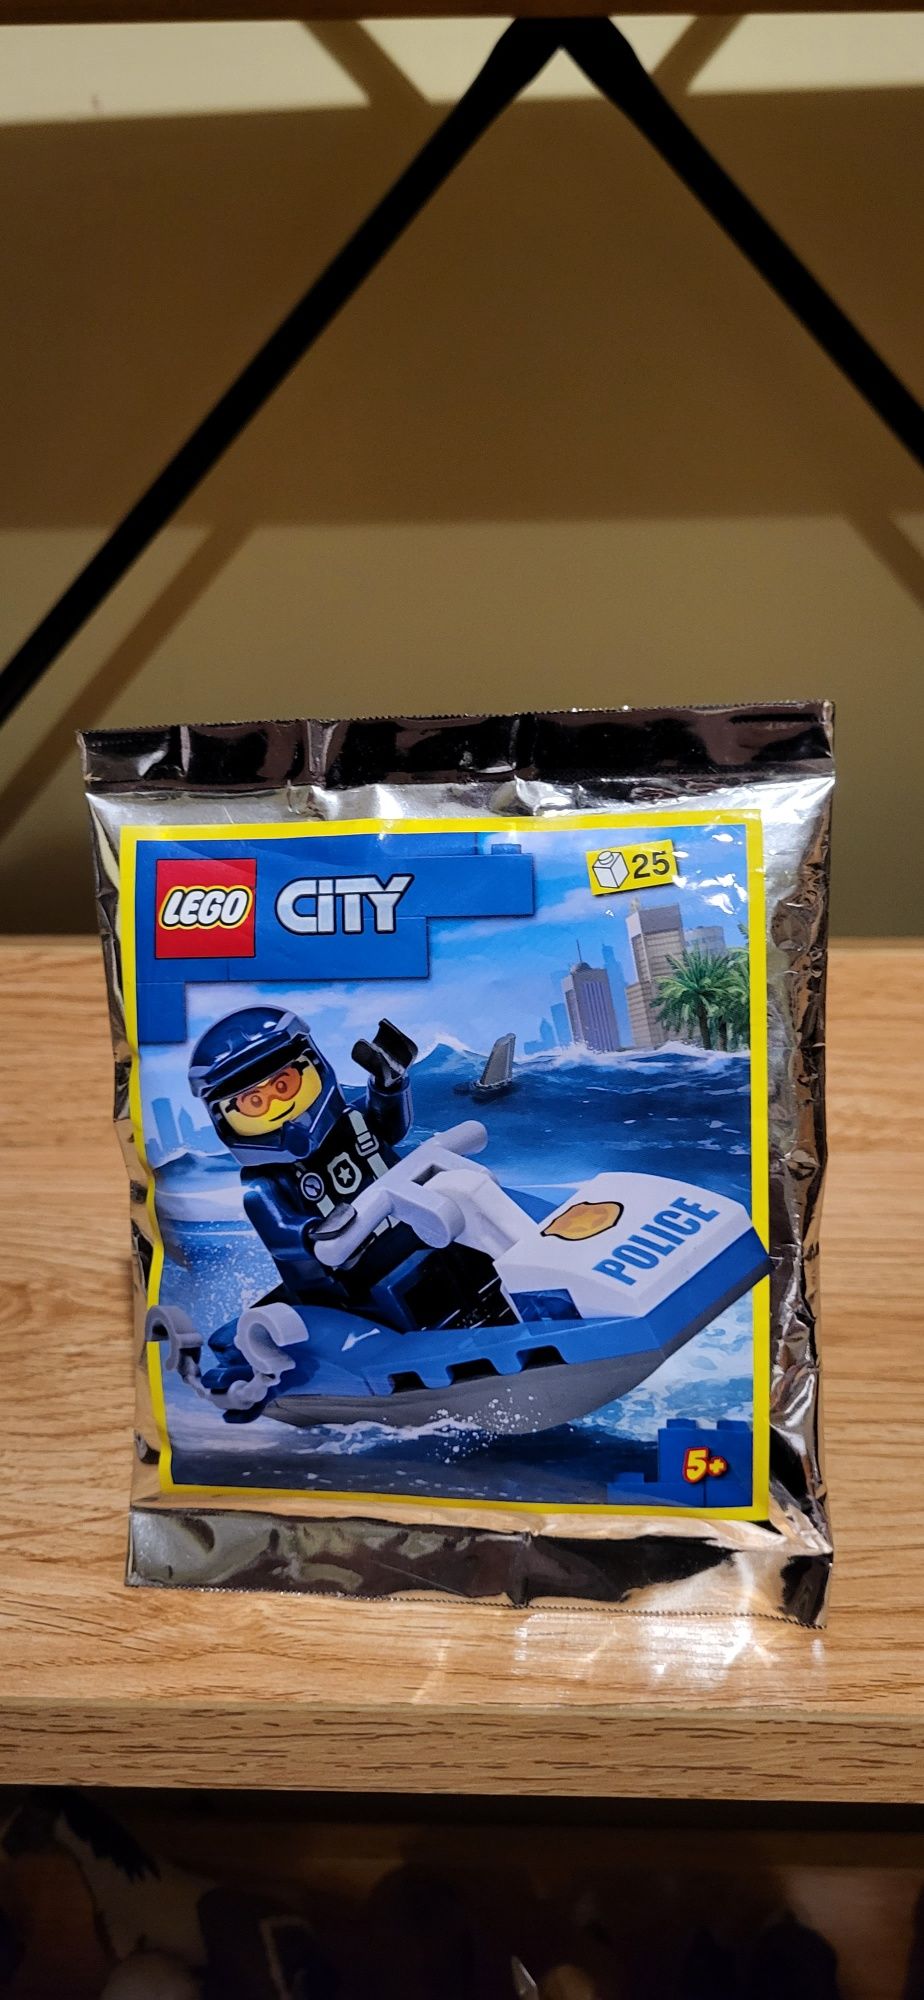 Lego City 952207 Policjant plus skuter wodny saszetka z klockami